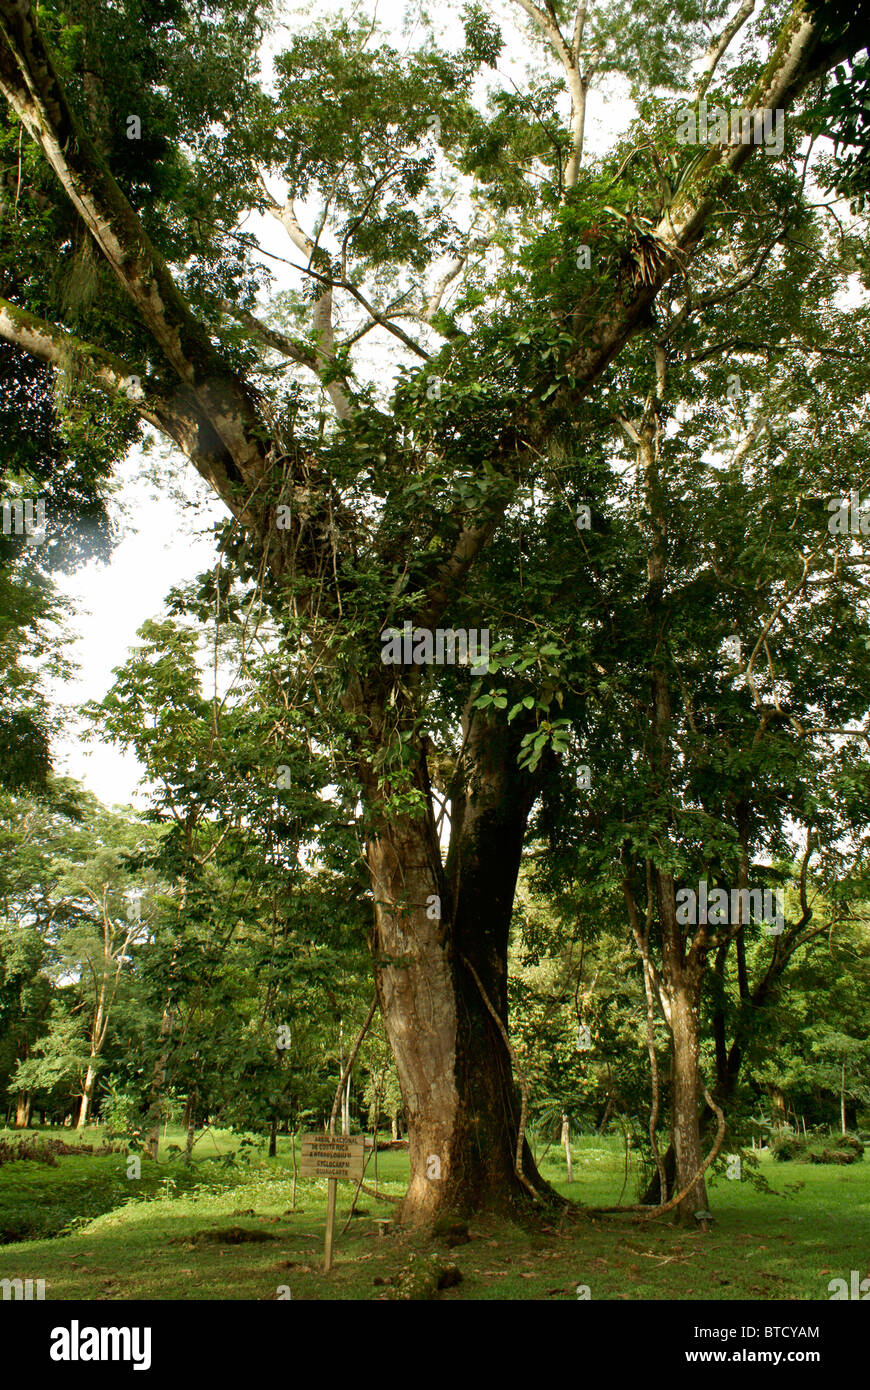 Árbol de guanacaste, árbol nacional de Costa Rica, en el Jardín Botánico de Lancetilla, Honduras Foto de stock